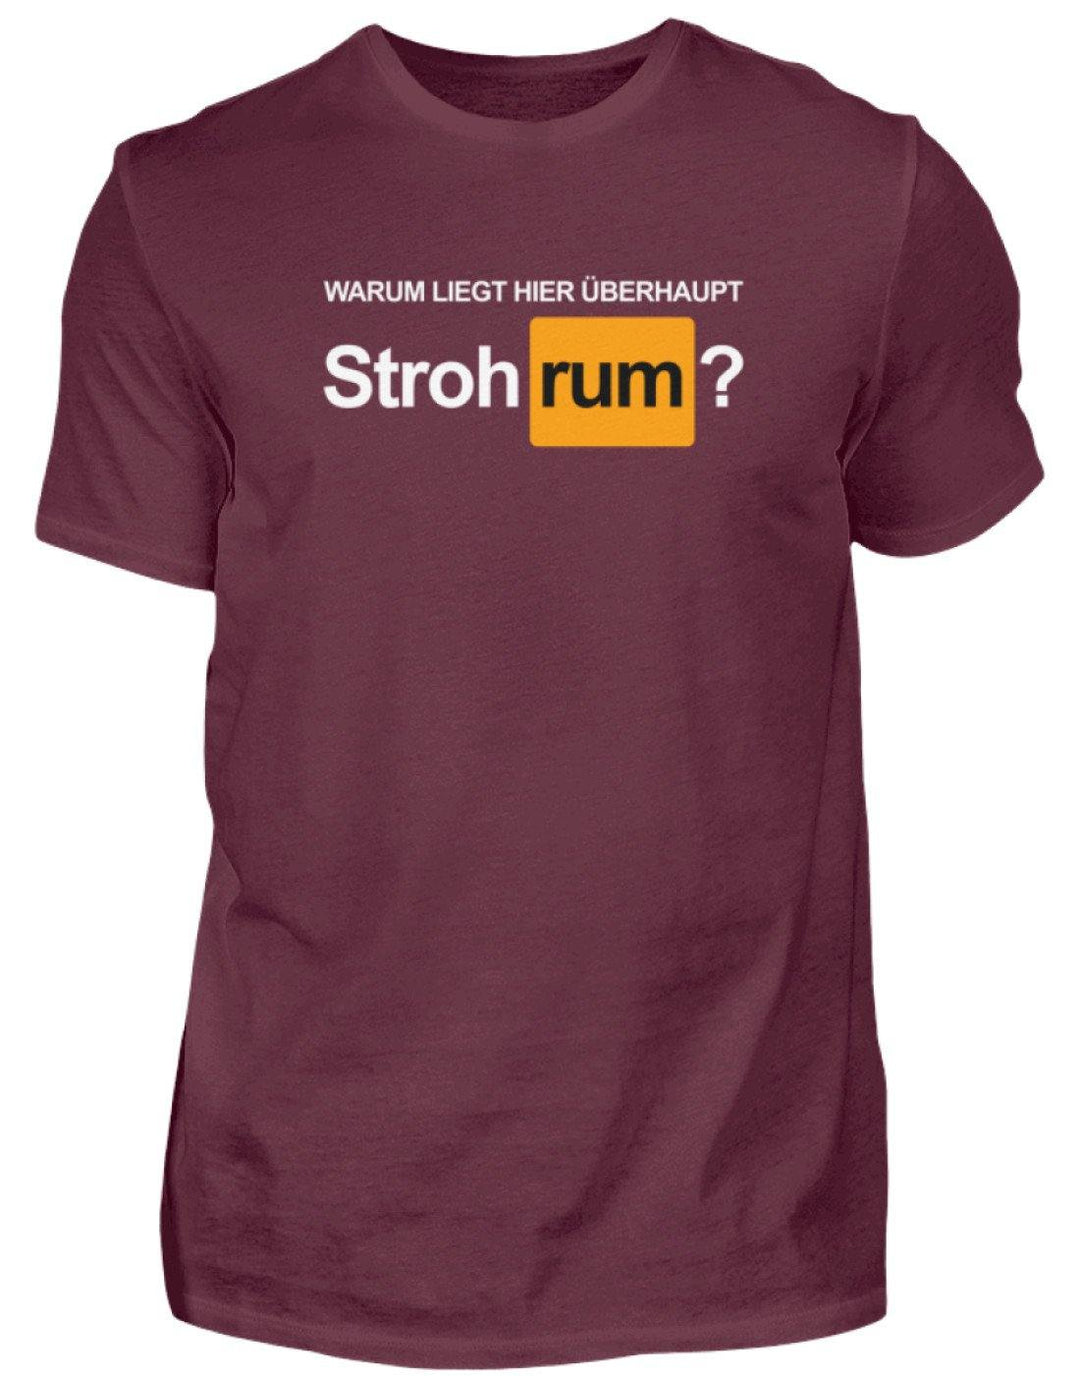 Stroh rum - Words on Shirts  - Herren Shirt - Words on Shirts Sag es mit dem Mittelfinger Shirts Hoodies Sweatshirt Taschen Gymsack Spruch Sprüche Statement